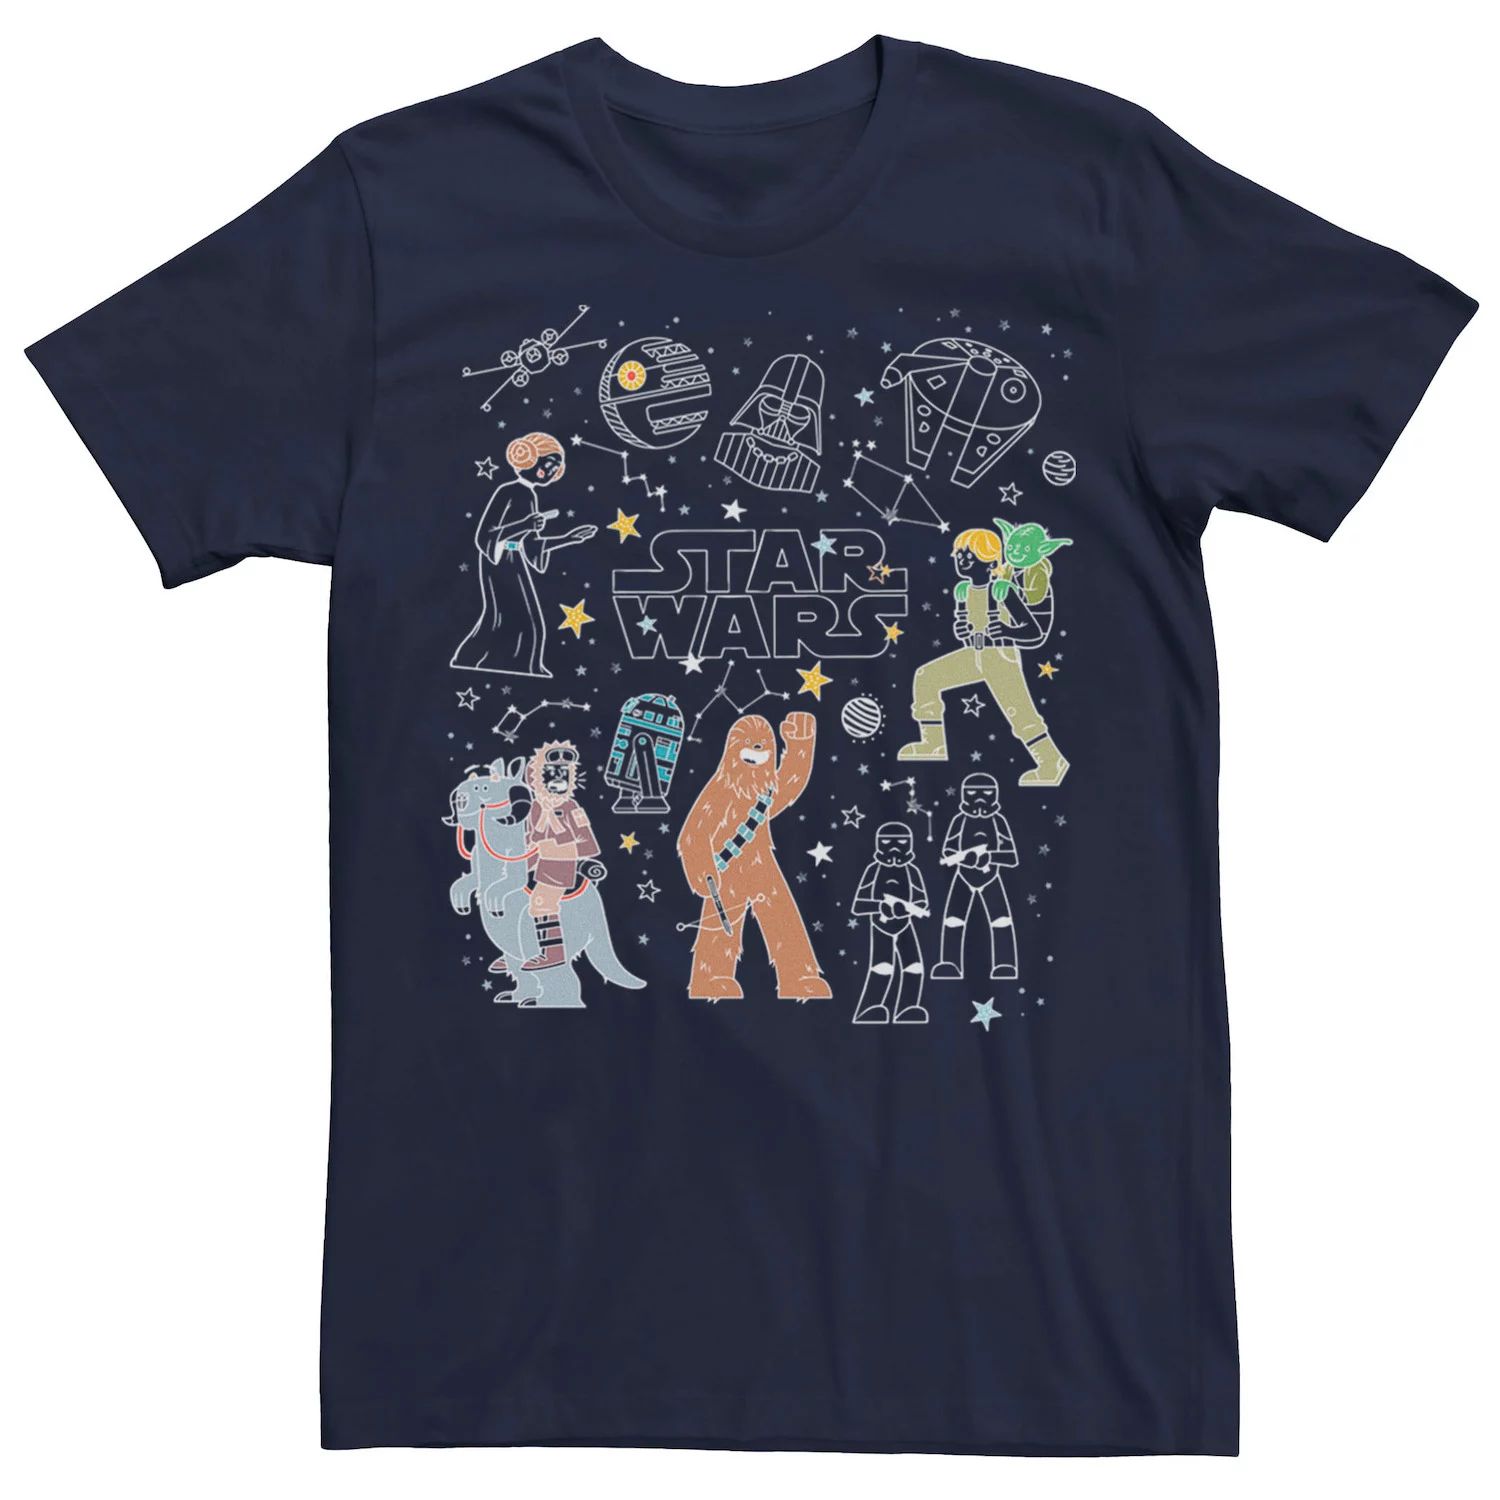 цена Мужская футболка с рисунками «Звездные войны» и «Созвездие», Синяя Star Wars, синий